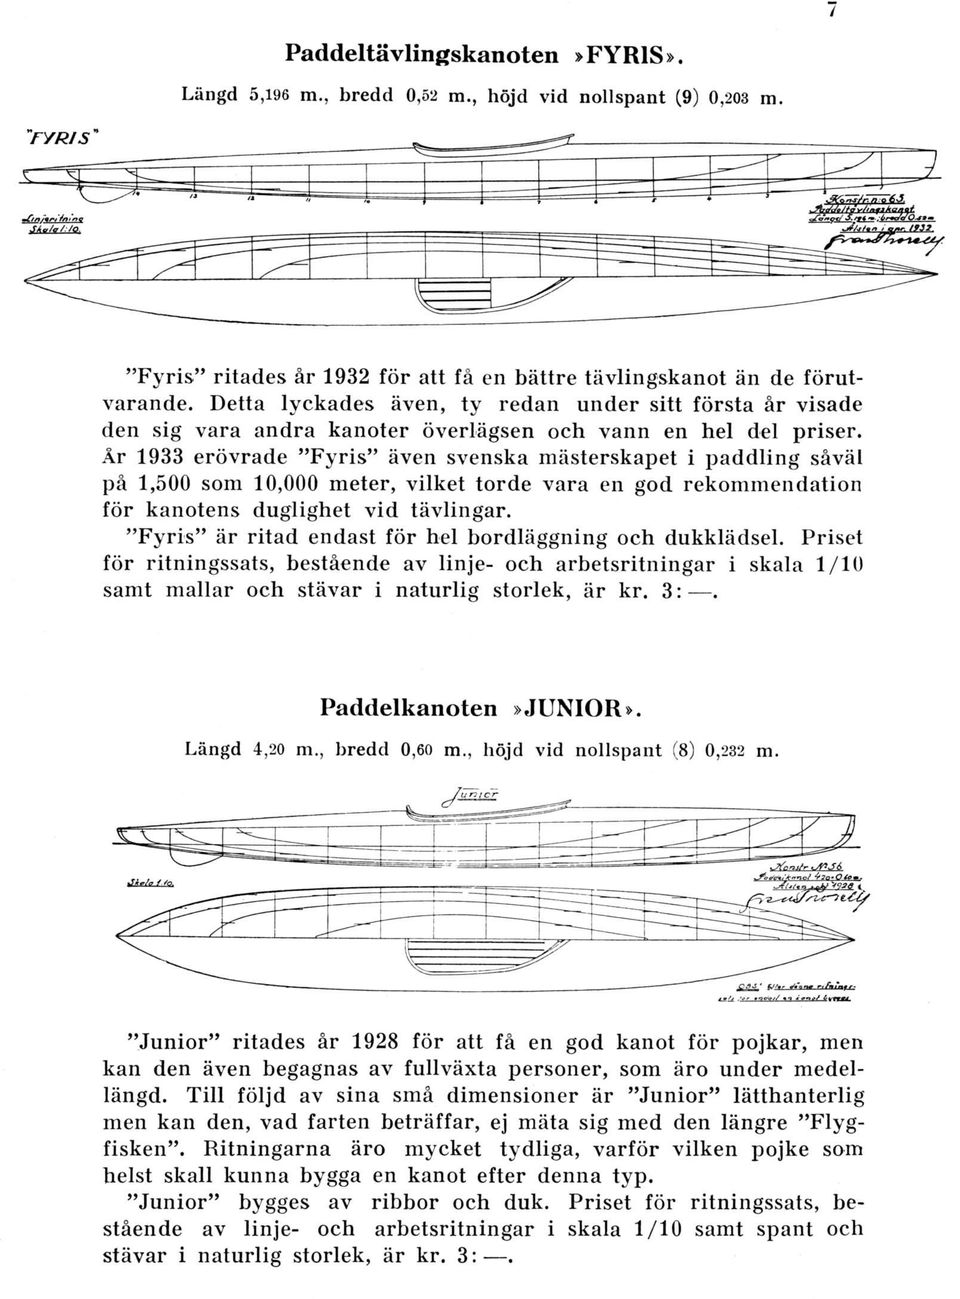 År 1933 erövrade "Fyris" även svenska mästerskapet i paddling såväl på 1,500 som 10,000 meter, vilket torde vara en god rekommendation för kanotens duglighet vid tävlingar.